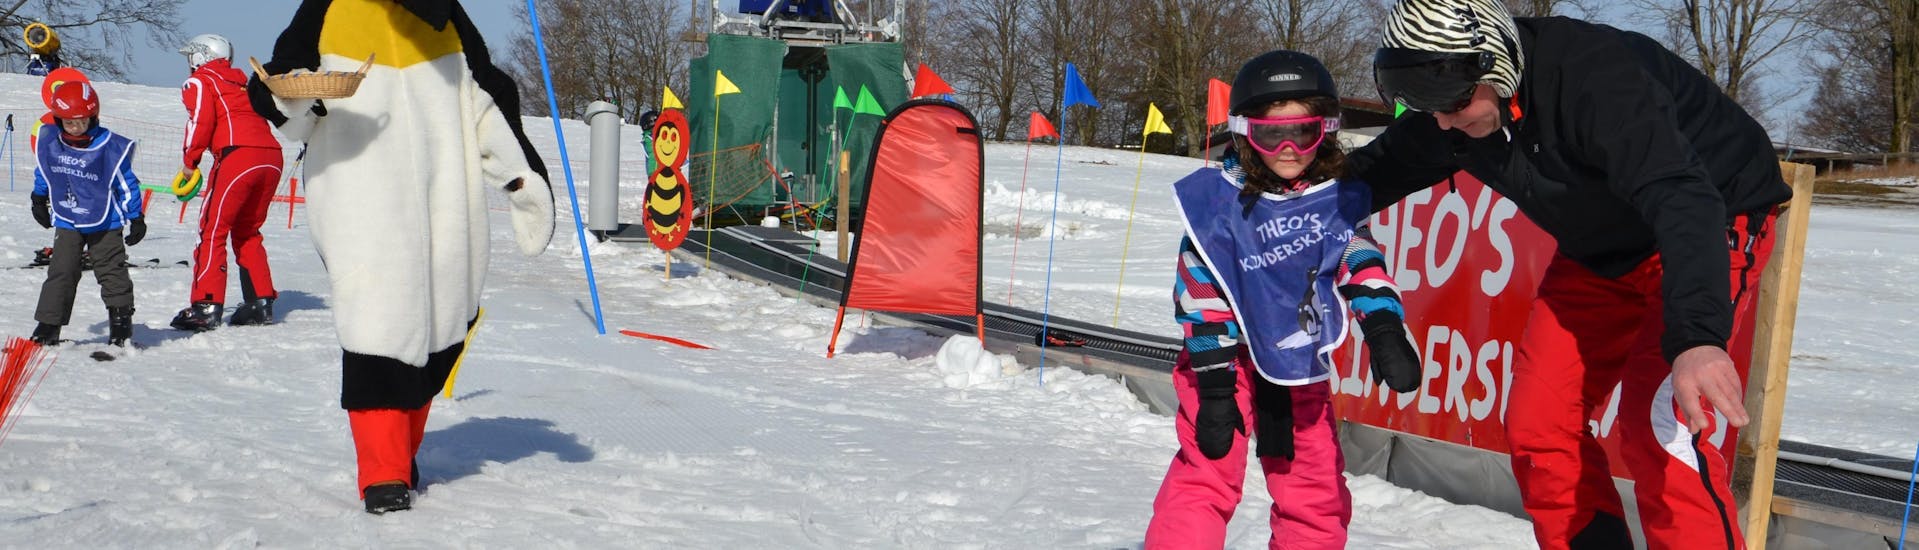 Clases de esquí privadas para niños a partir de 5 años con experiencia.